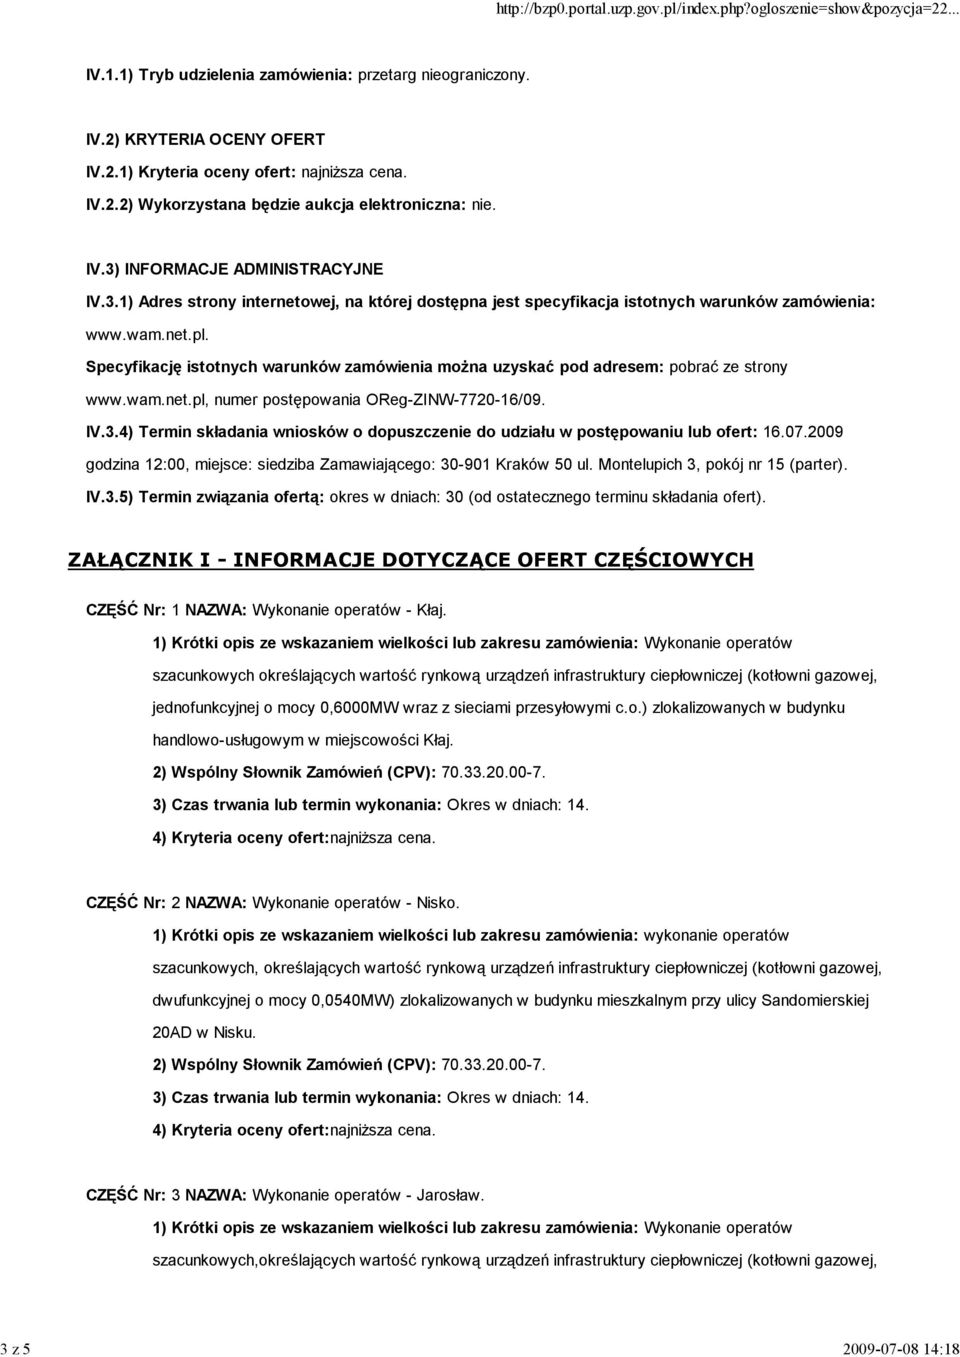 Specyfikację istotnych warunków zamówienia moŝna uzyskać pod adresem: pobrać ze strony www.wam.net.pl, numer postępowania OReg-ZINW-7720-16/09. IV.3.